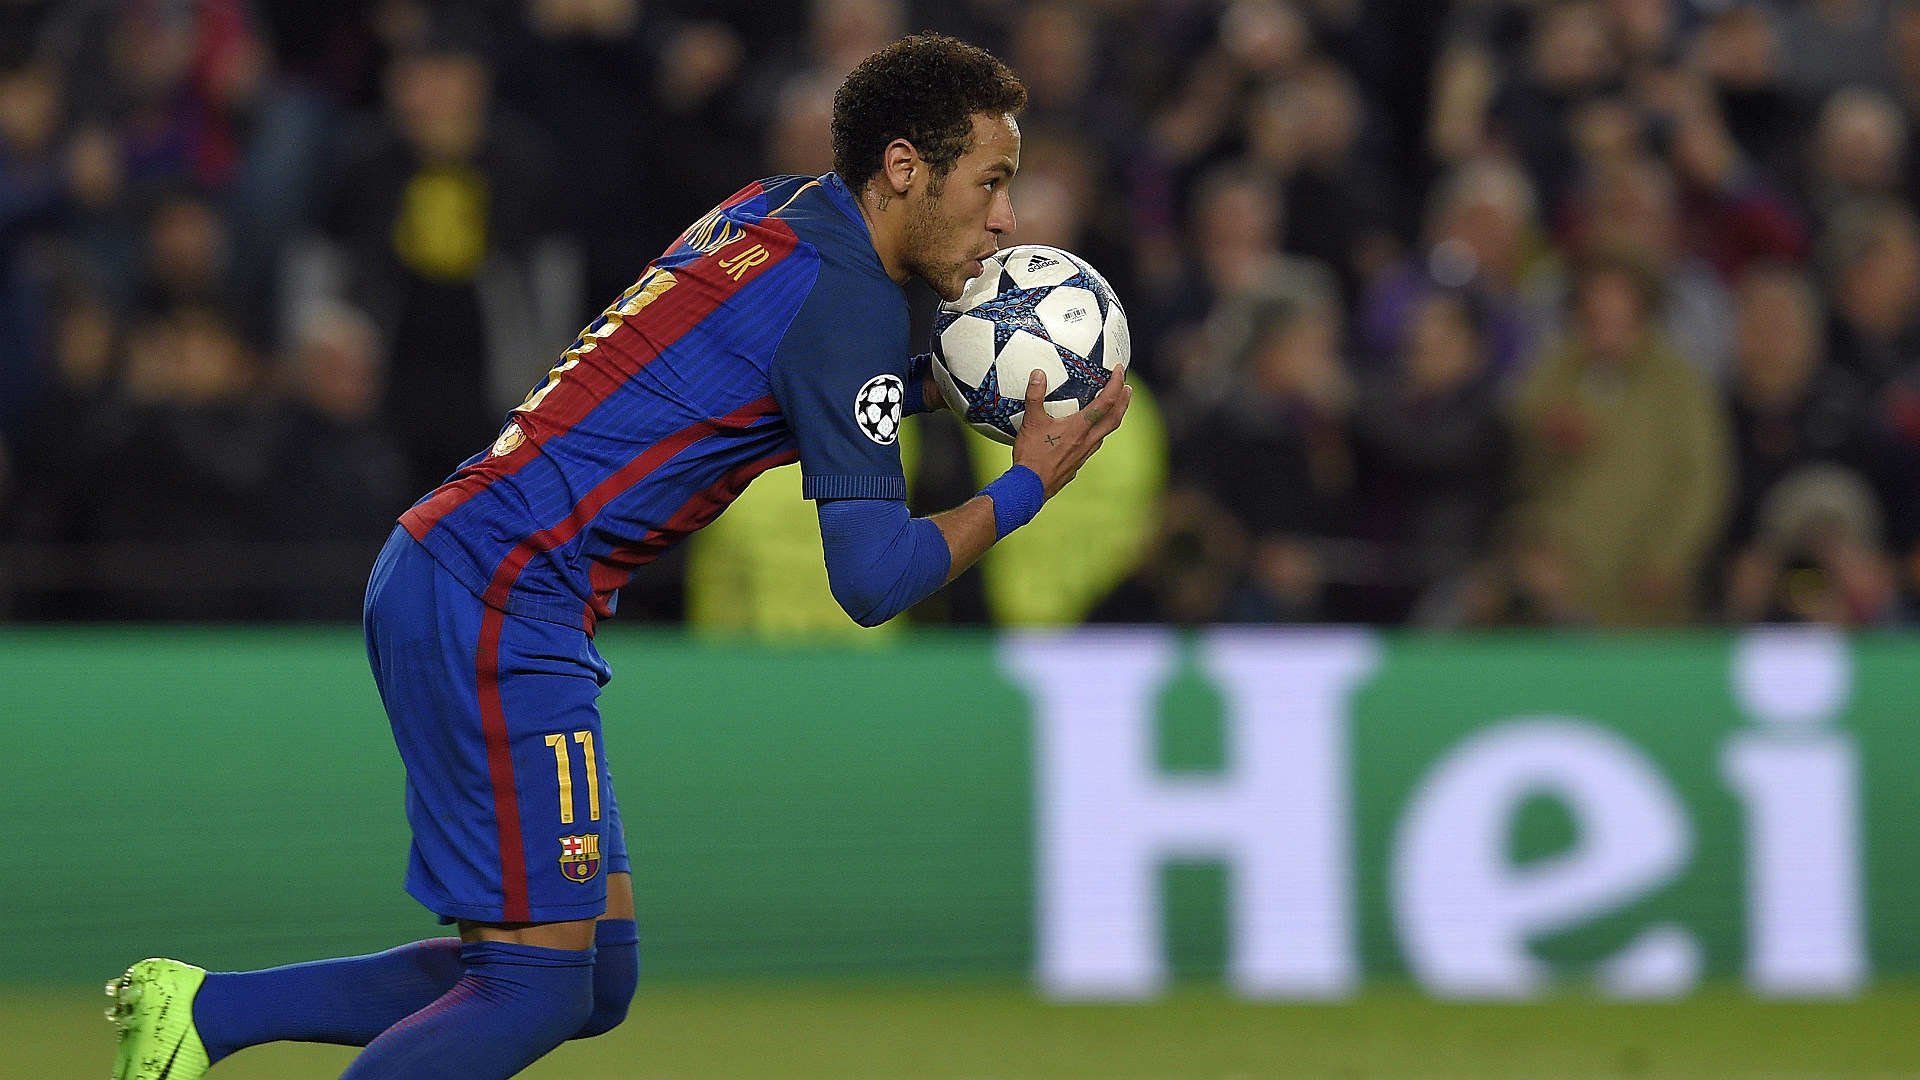 Neymar đang nhắm đến mục tiêu khi Paris Saint-Germain bị cầm chân trên sân nhà bởi Troyes (Phần 1)